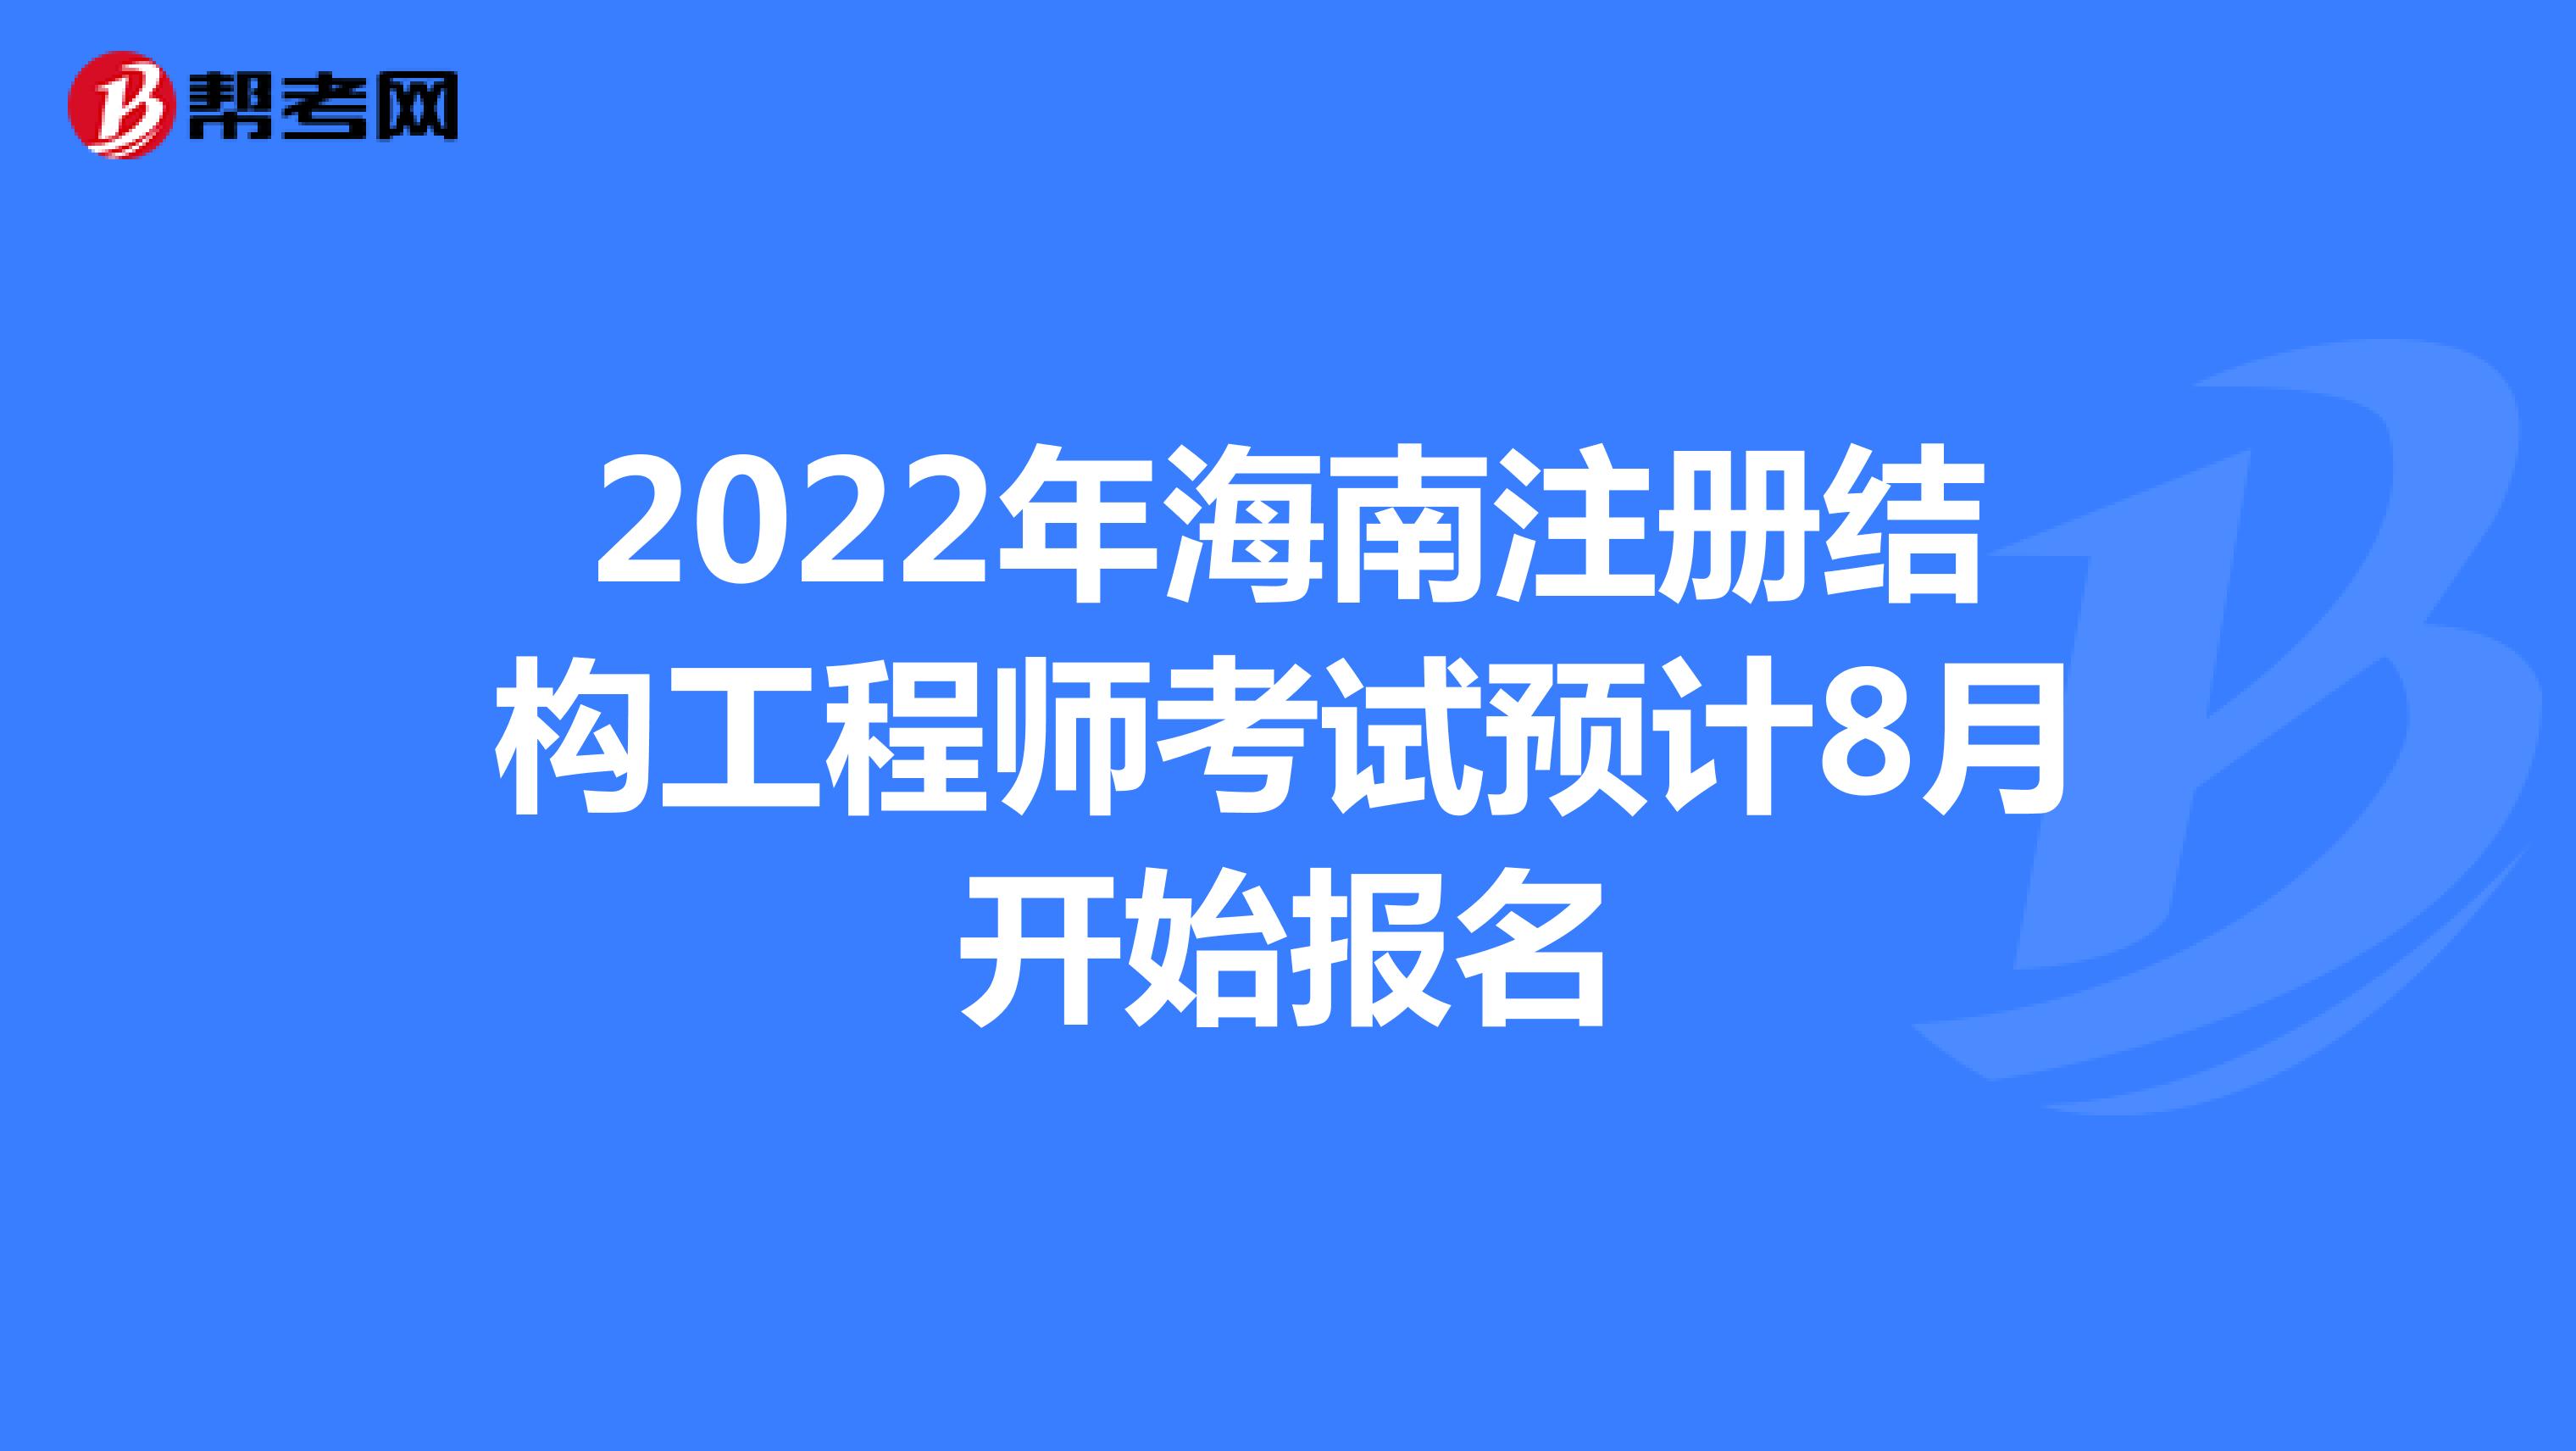 2022年海南注册结构工程师考试预计8月开始报名